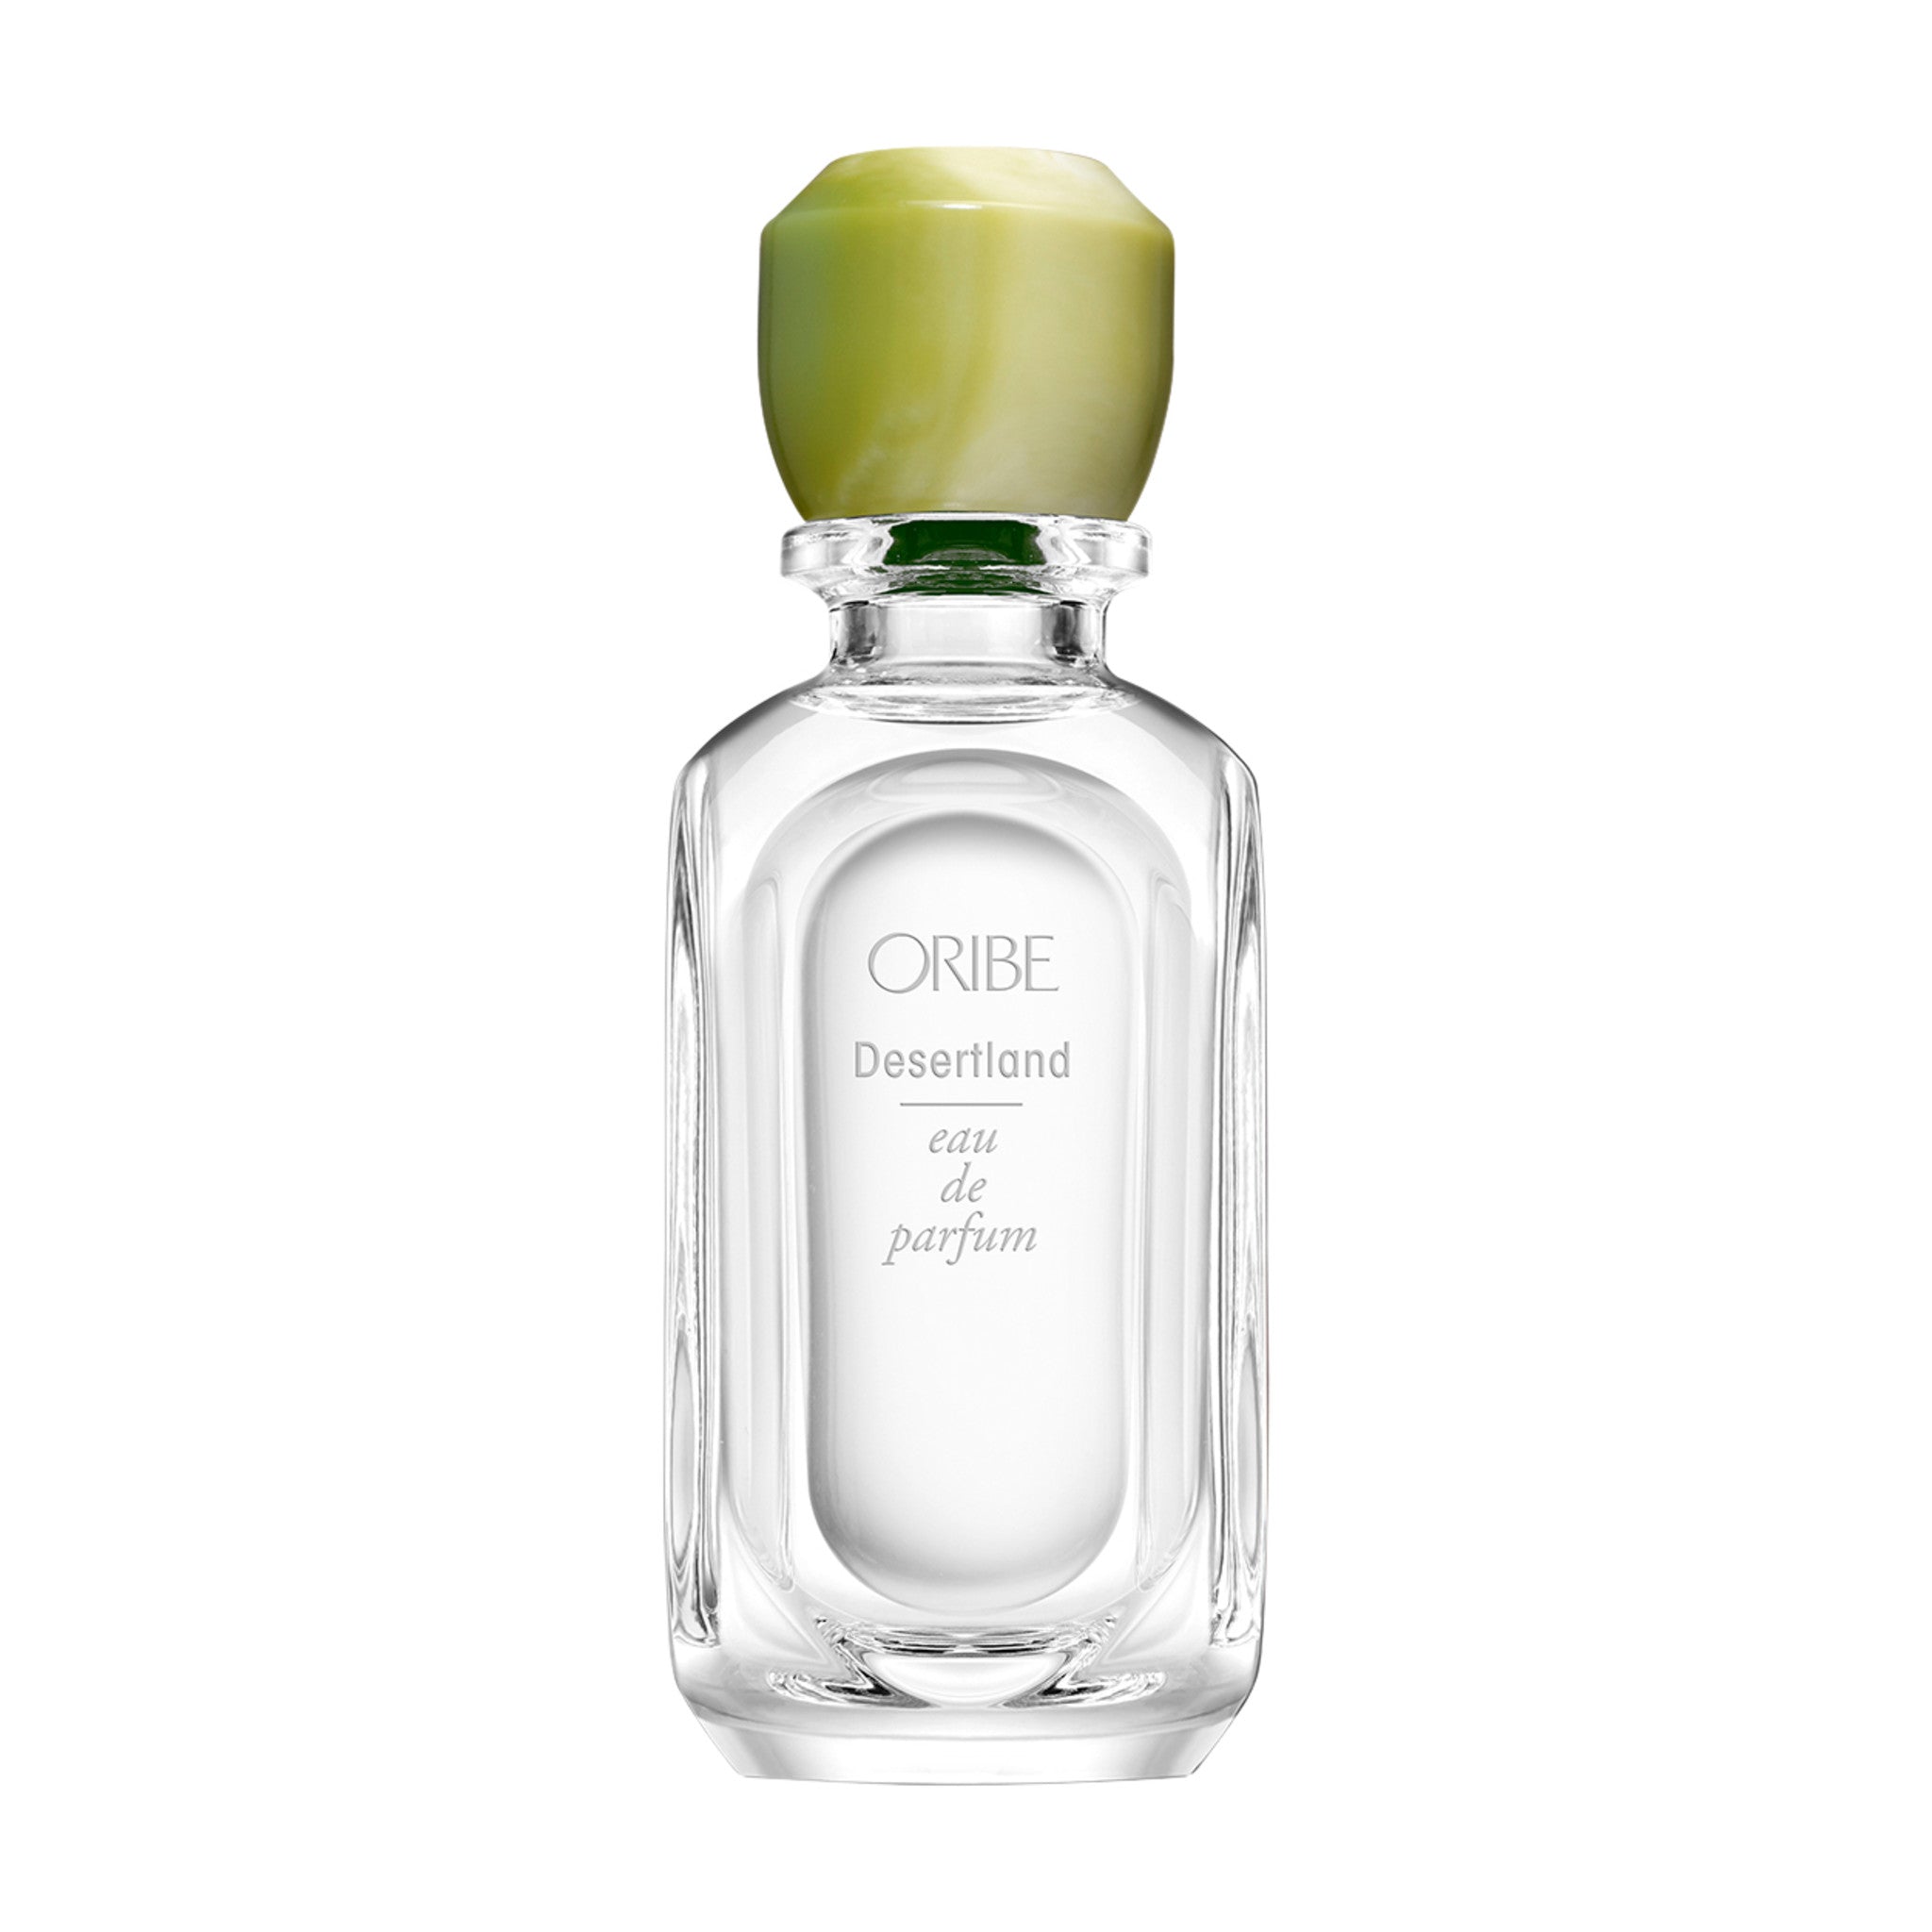 Oribe Desertland Eau de Parfum Size variant: 2.5 oz main image.